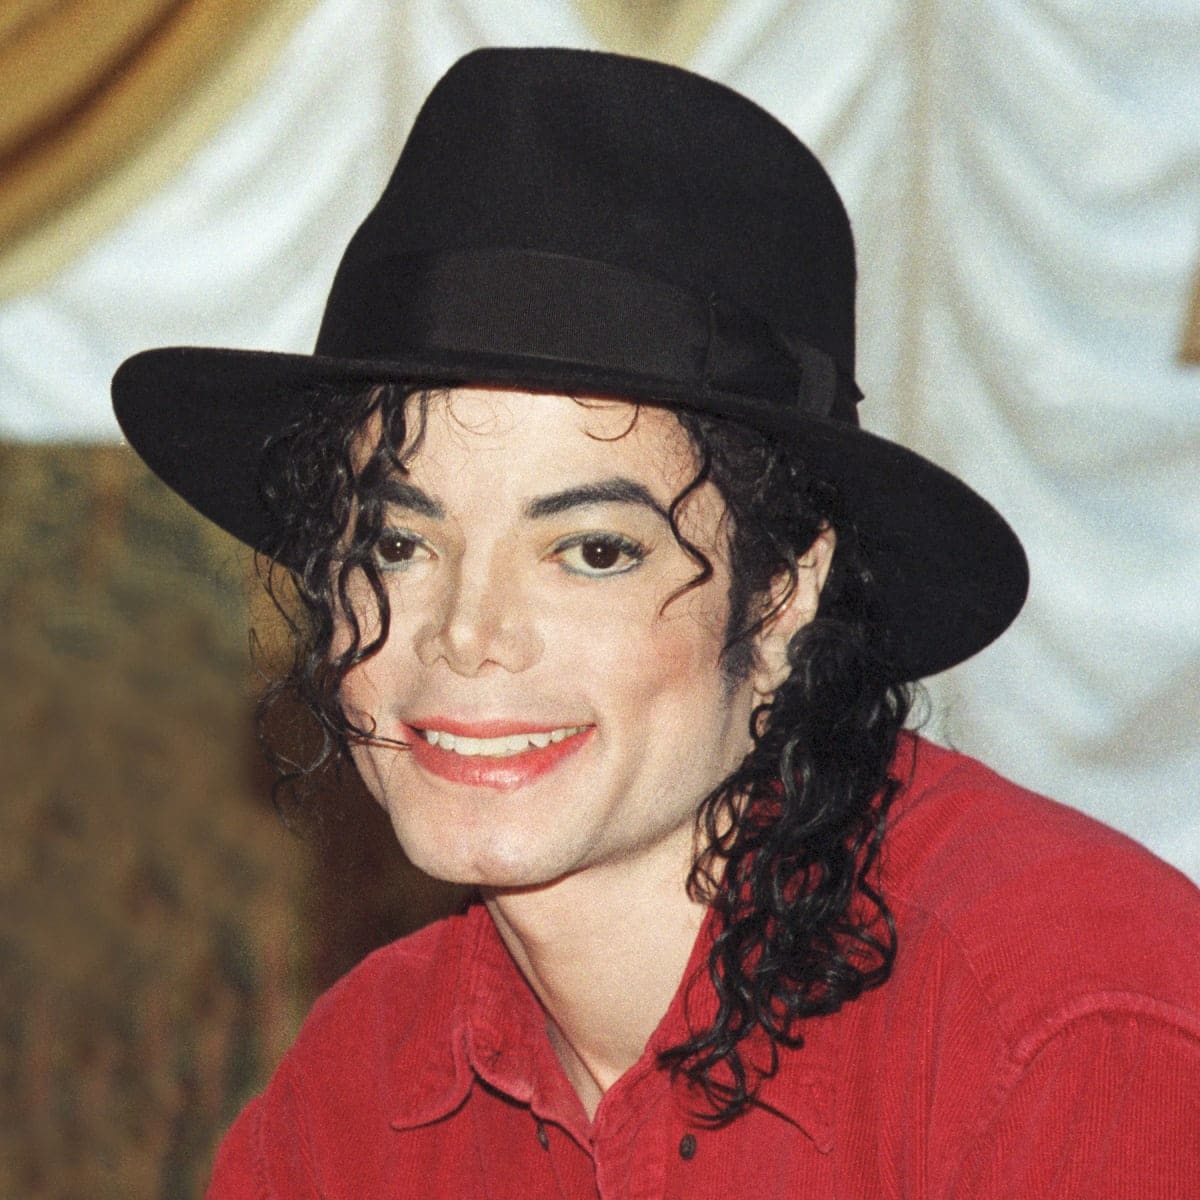 U rè di u Pop Michael Jackson